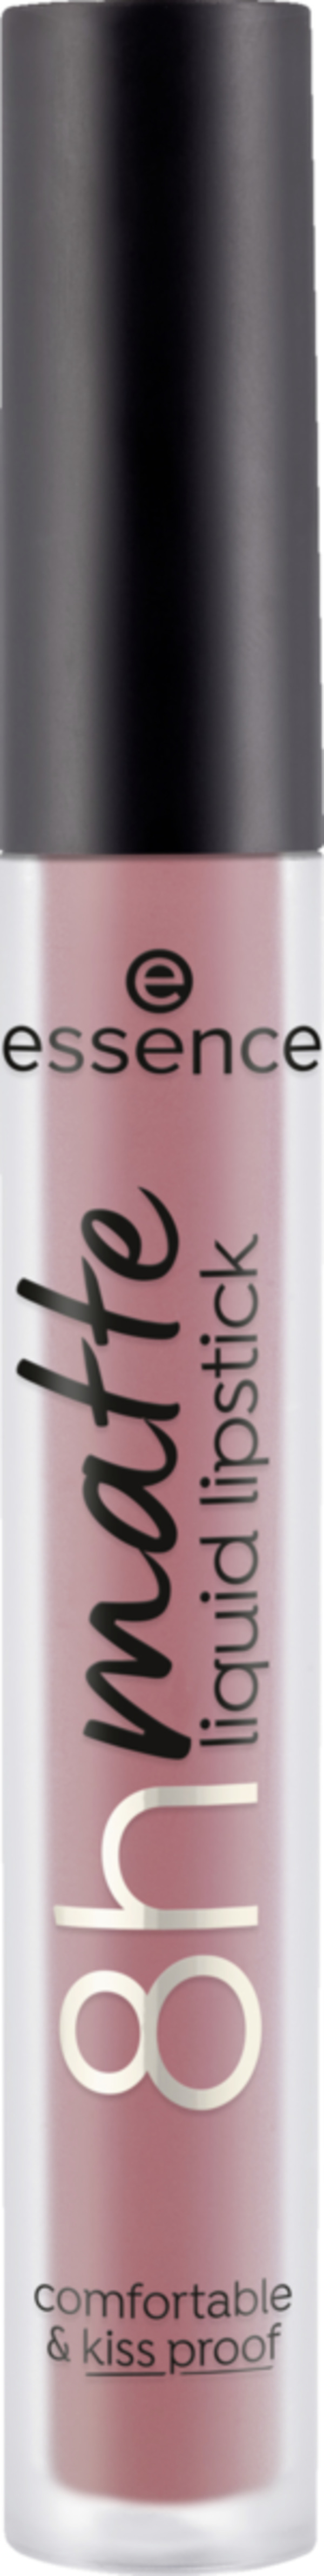 Bild 1 von essence 8h matte liquid lipstick 04